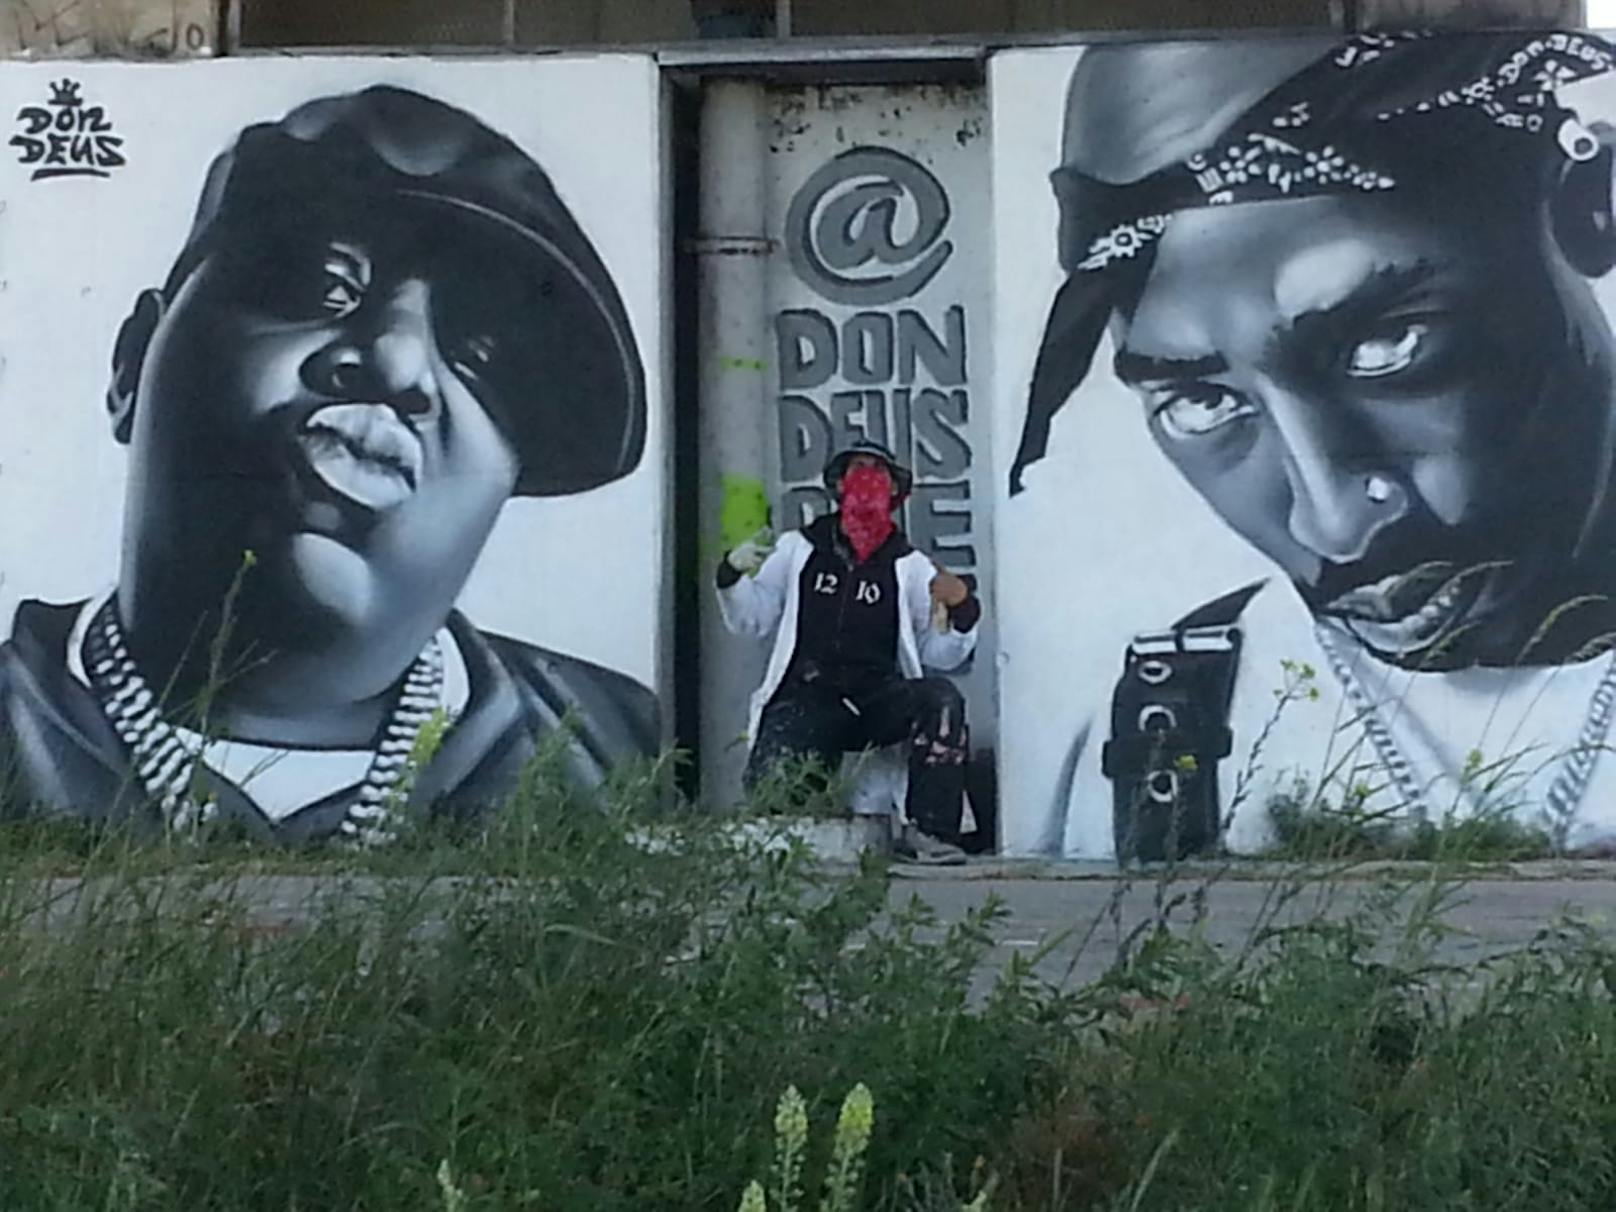 Wiener sprayt verfeindete Rapper-Legenden auf Wand